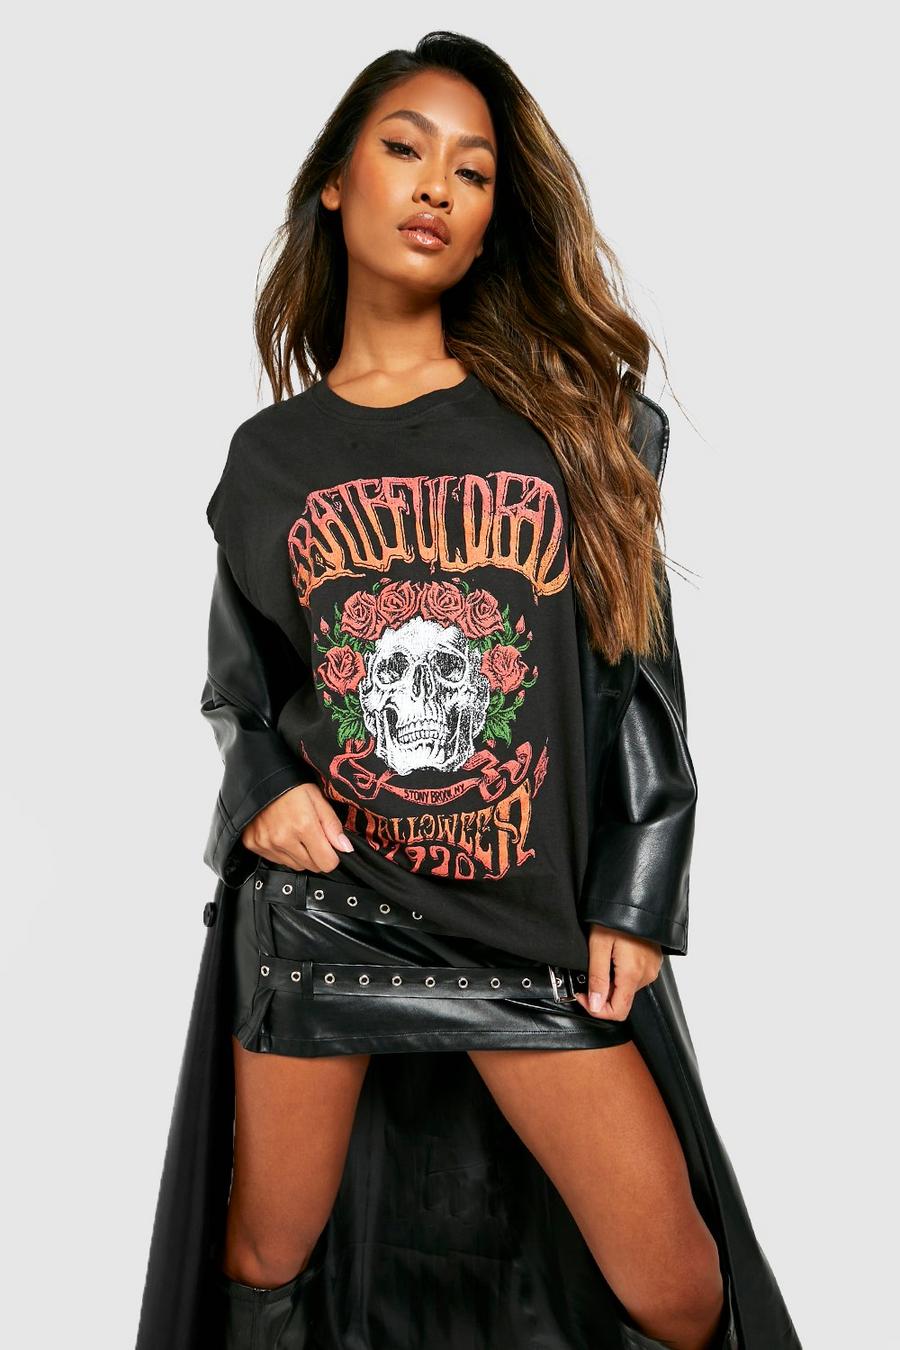 Black Grateful Dead Halloween Band T-shirt